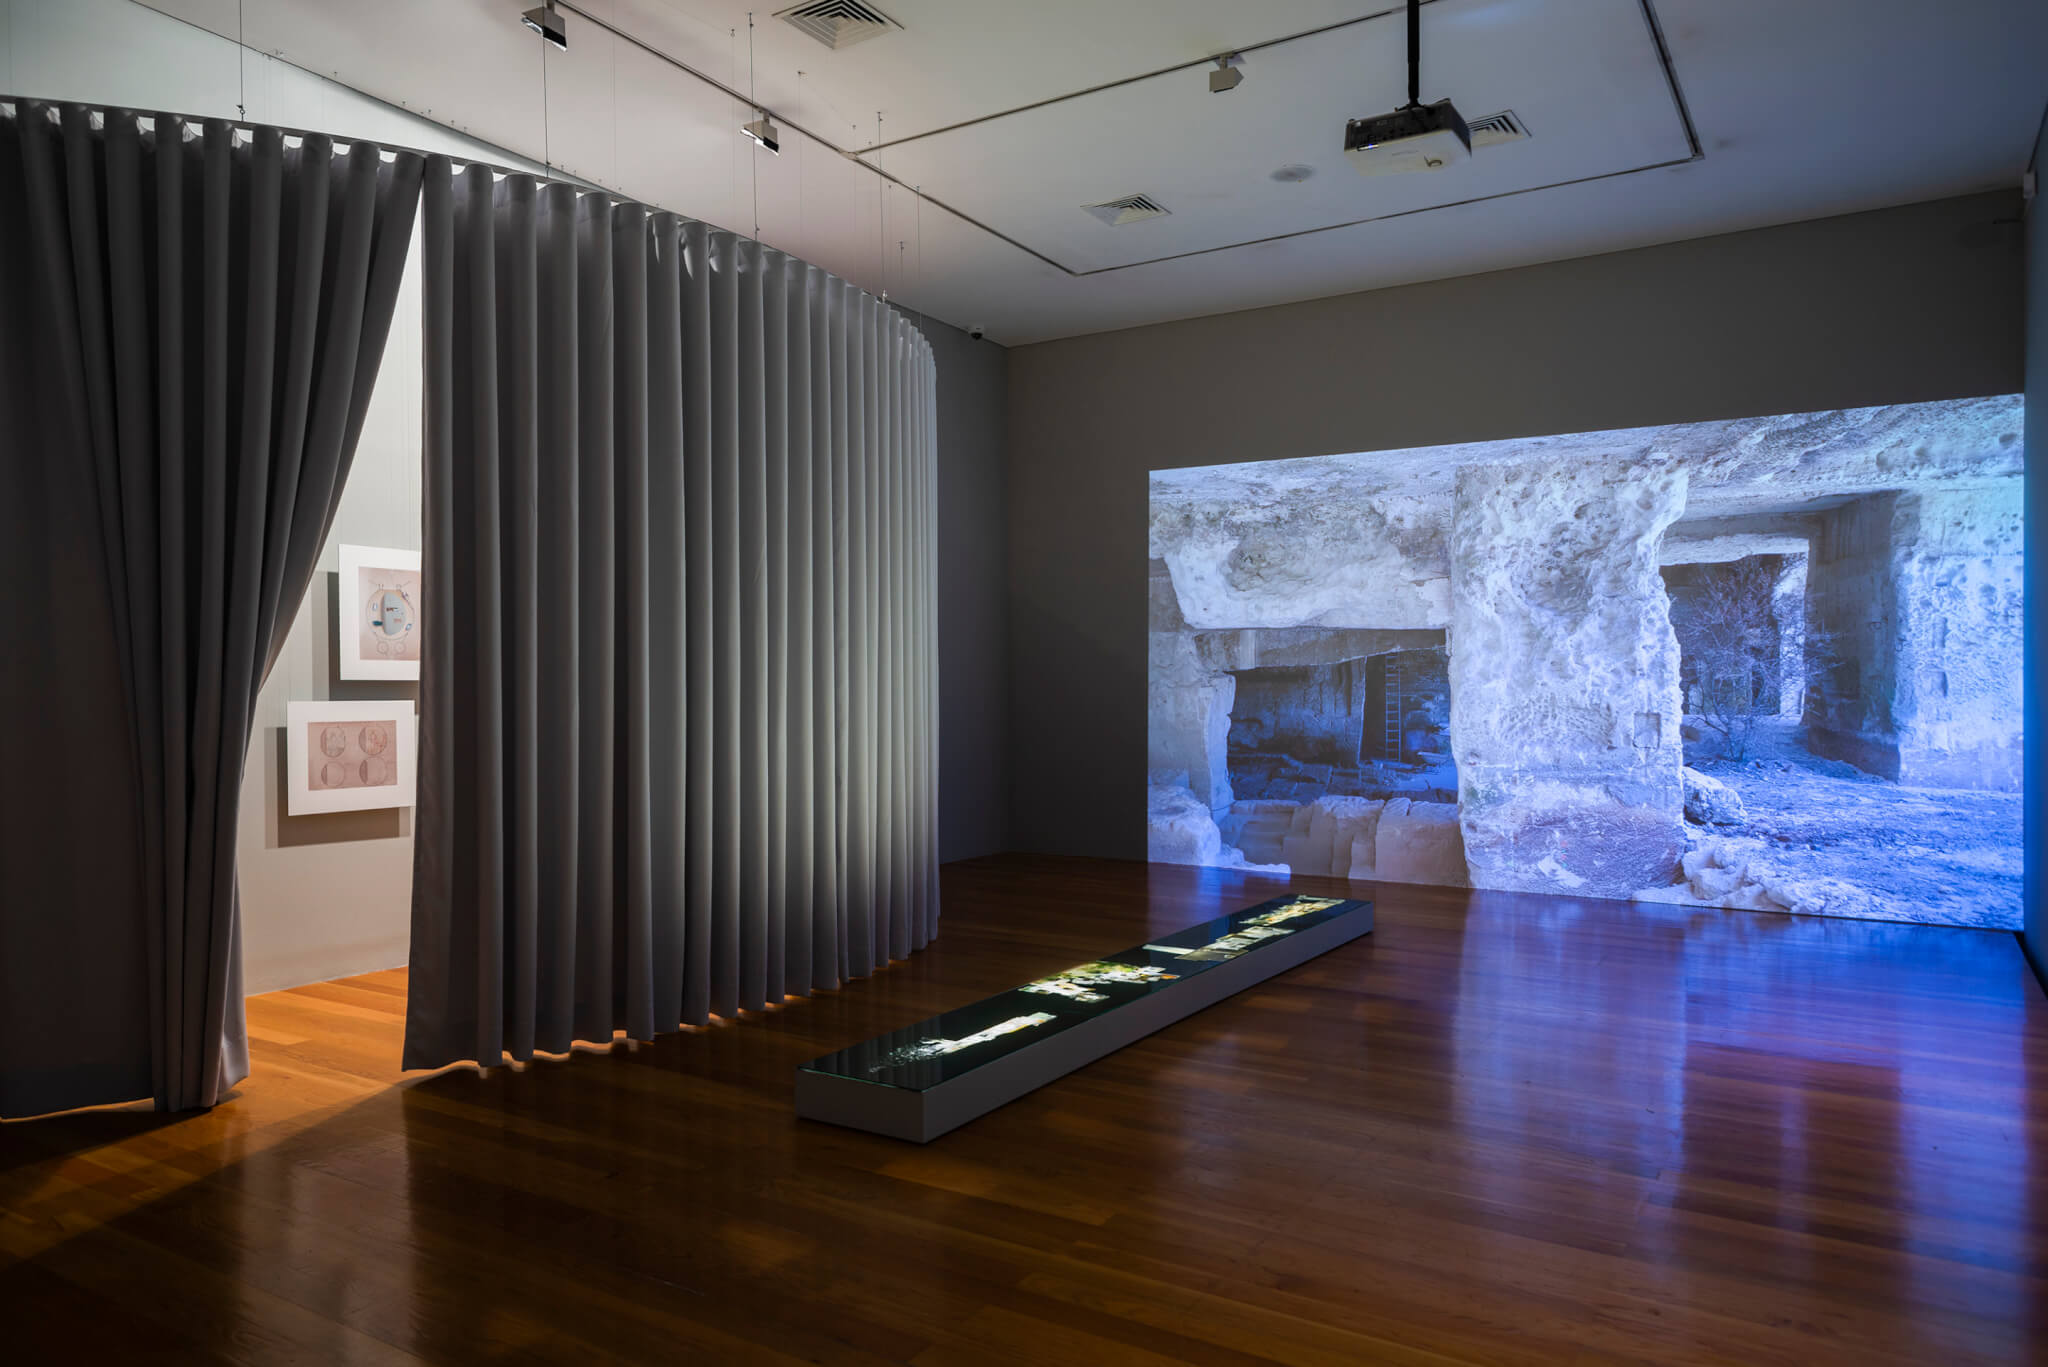 幕布分隔了黑暗的展览空间，远处的墙壁上有视频投影